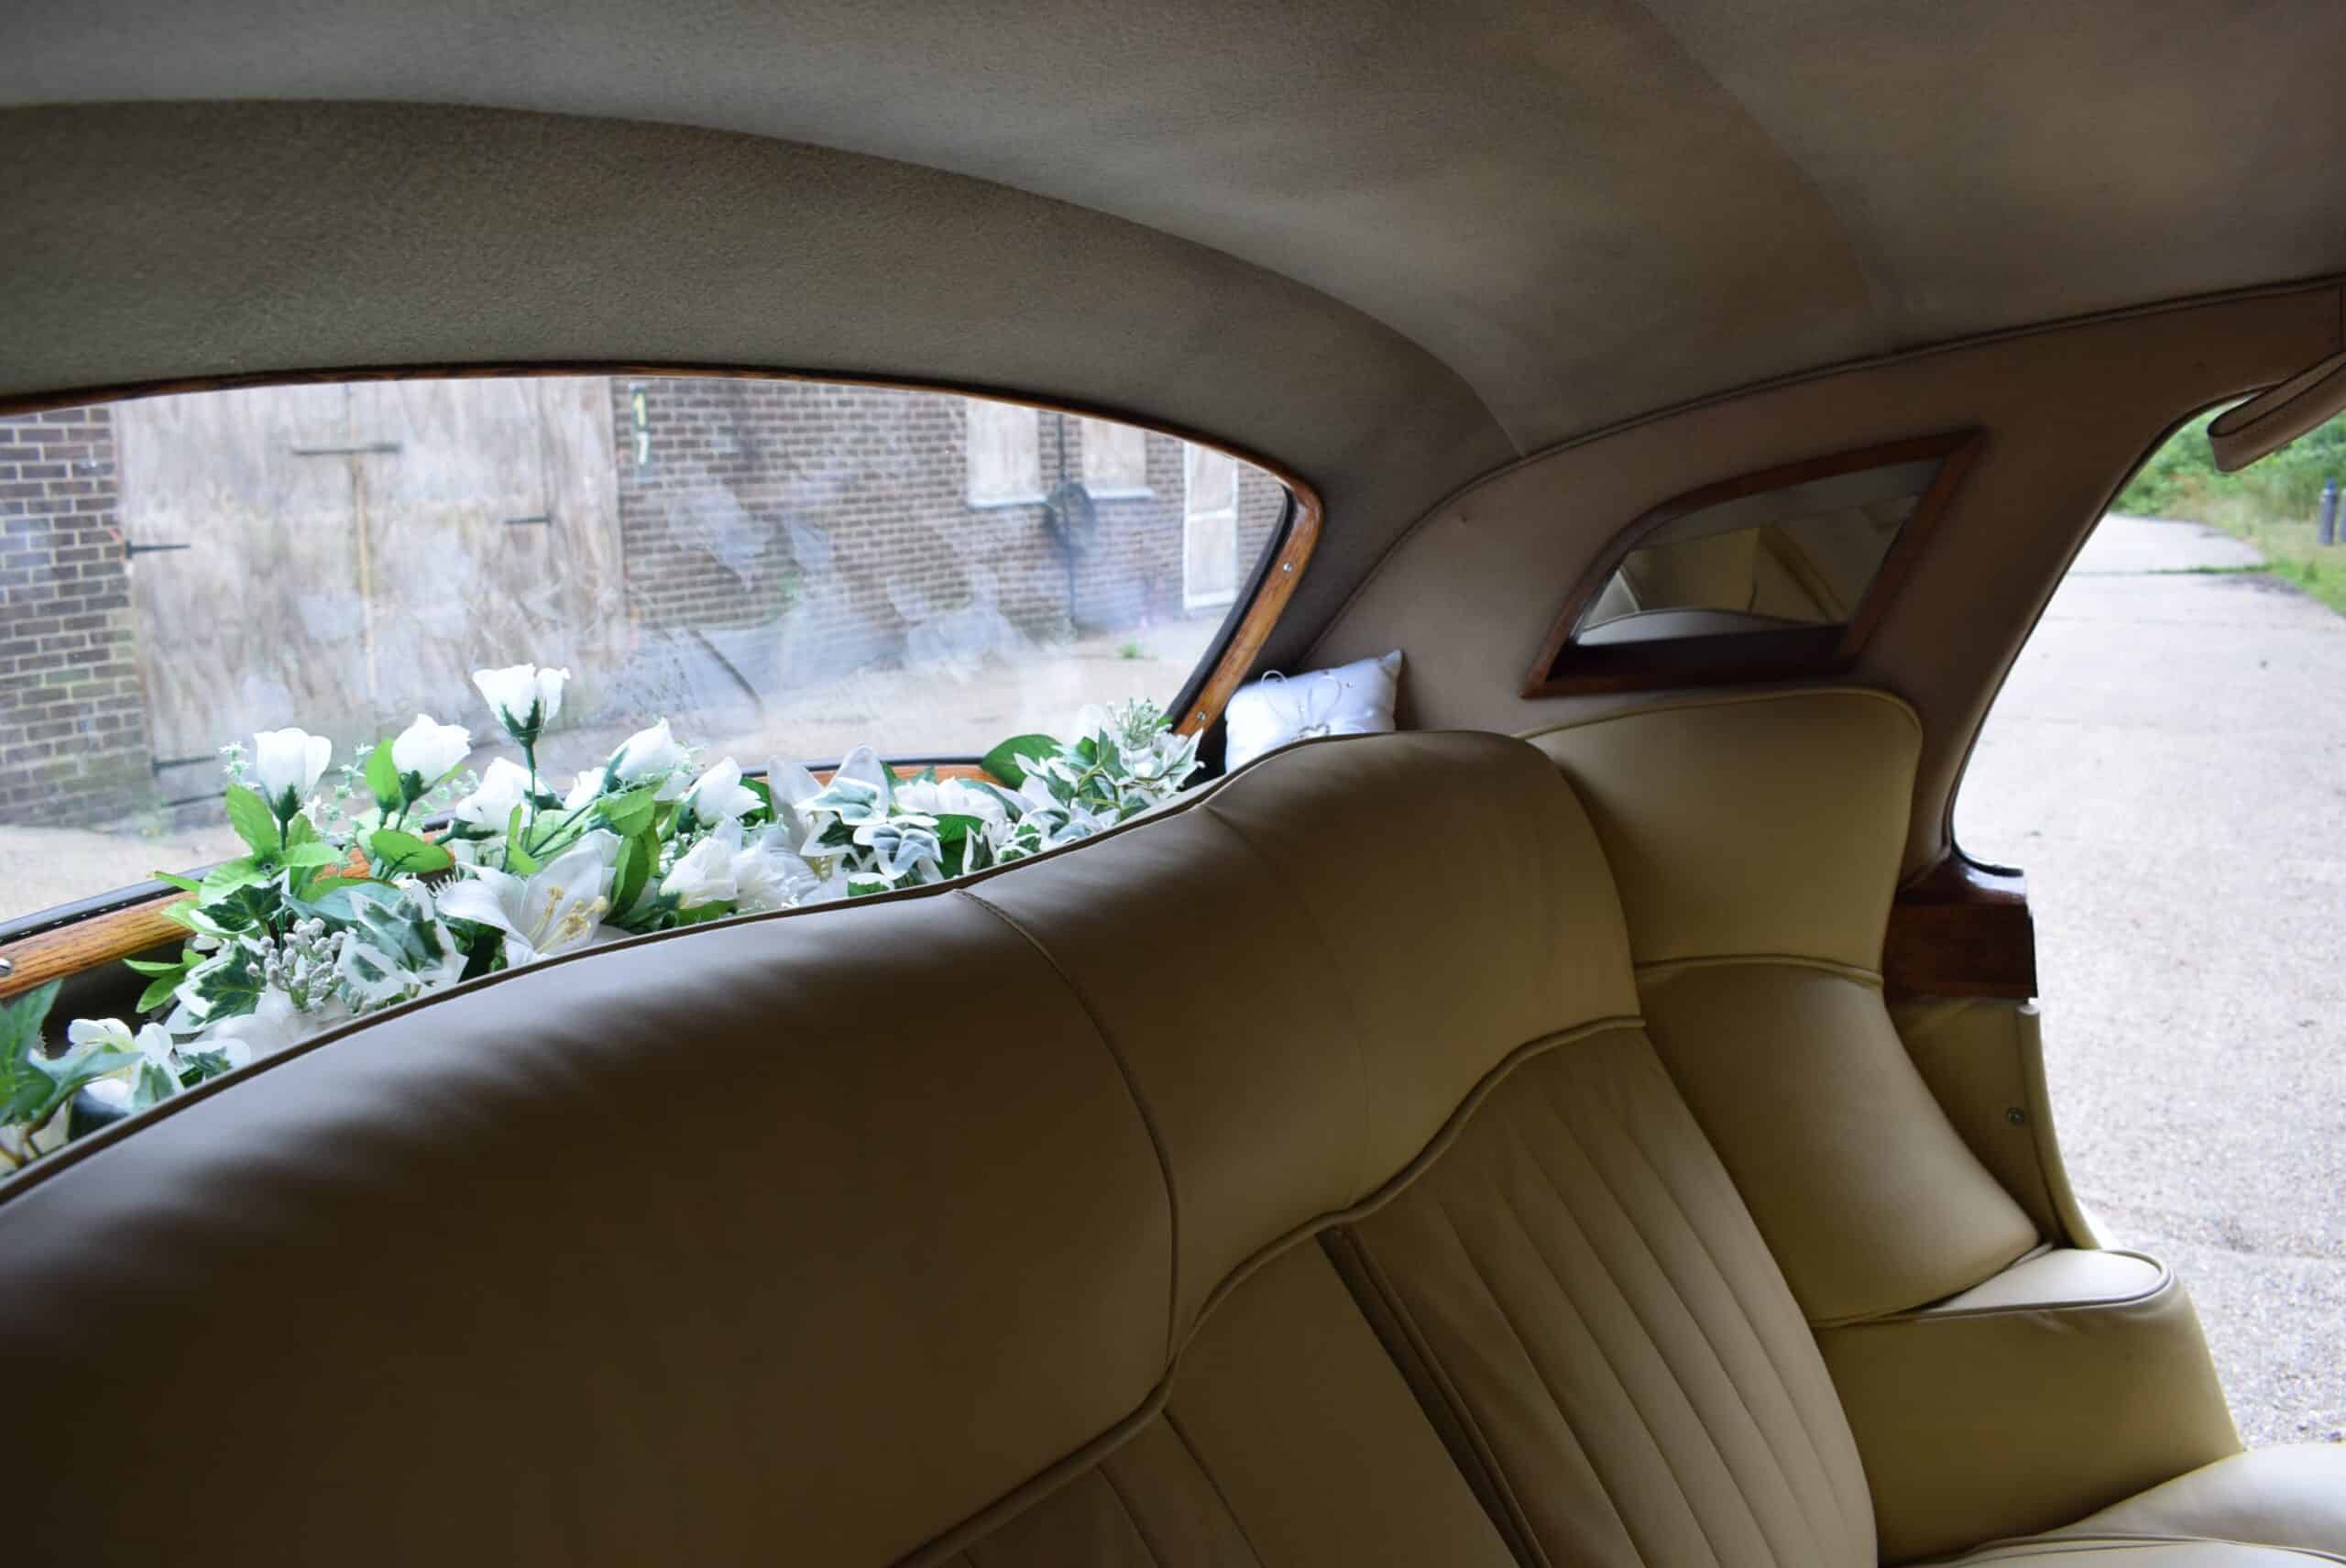 Bentley S1 Rolls Royce trouwvervoer huren